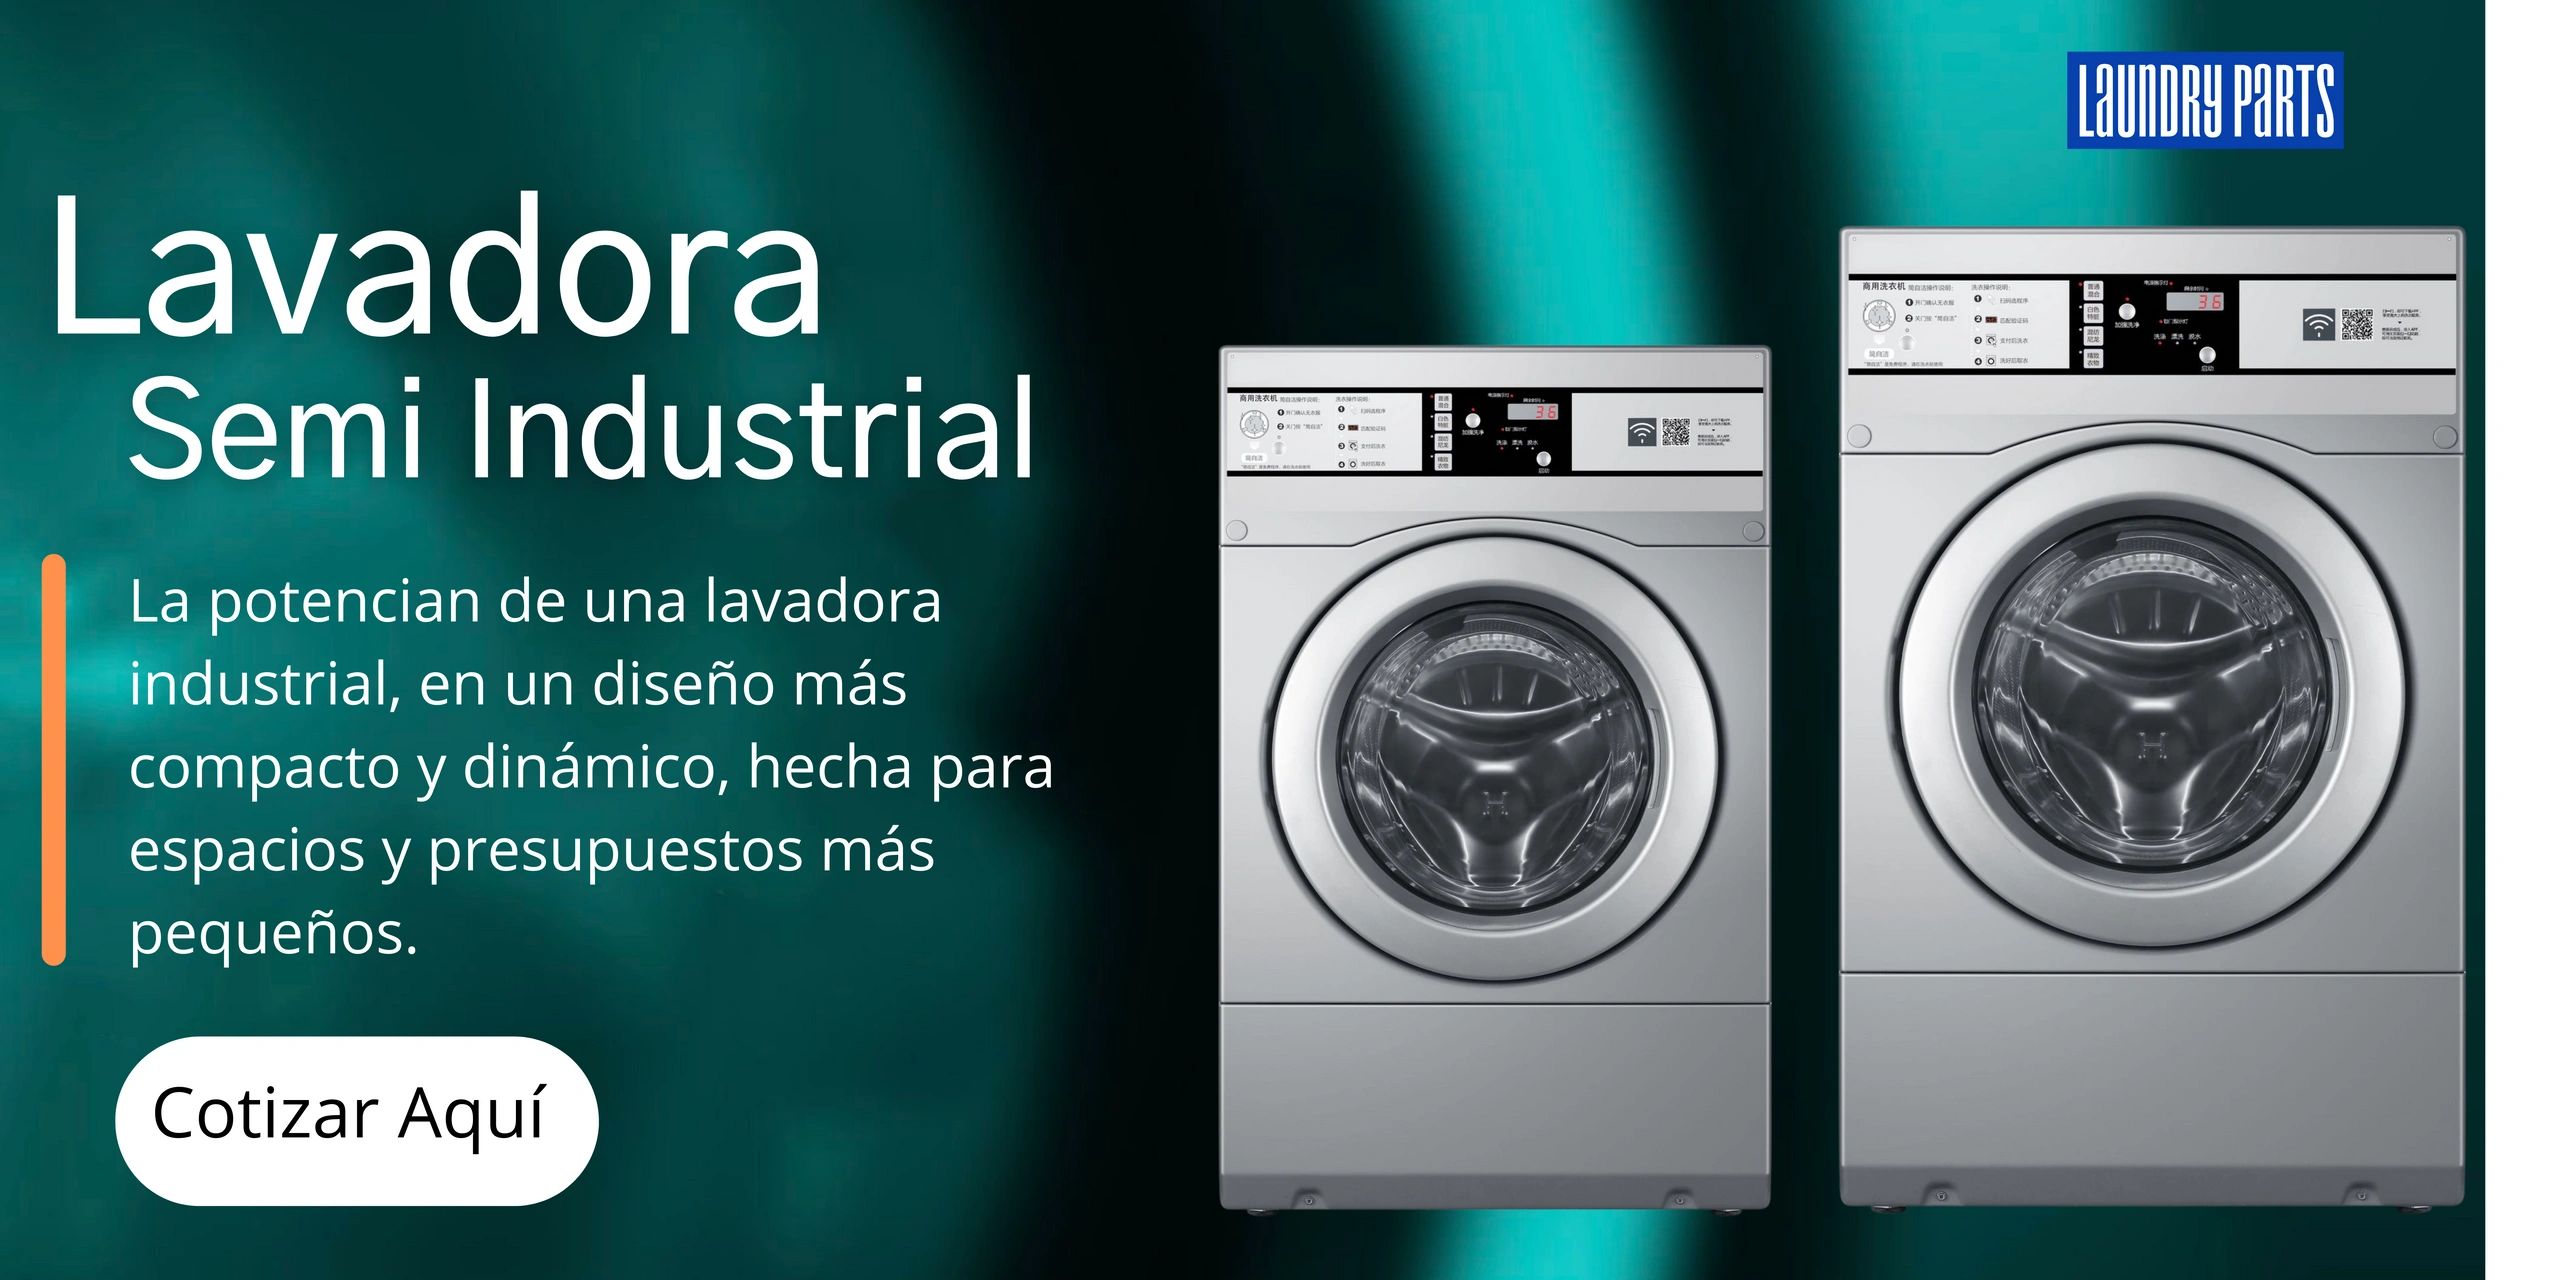 Laundryparts - Lavadoras Y Secadoras Semi Industriales